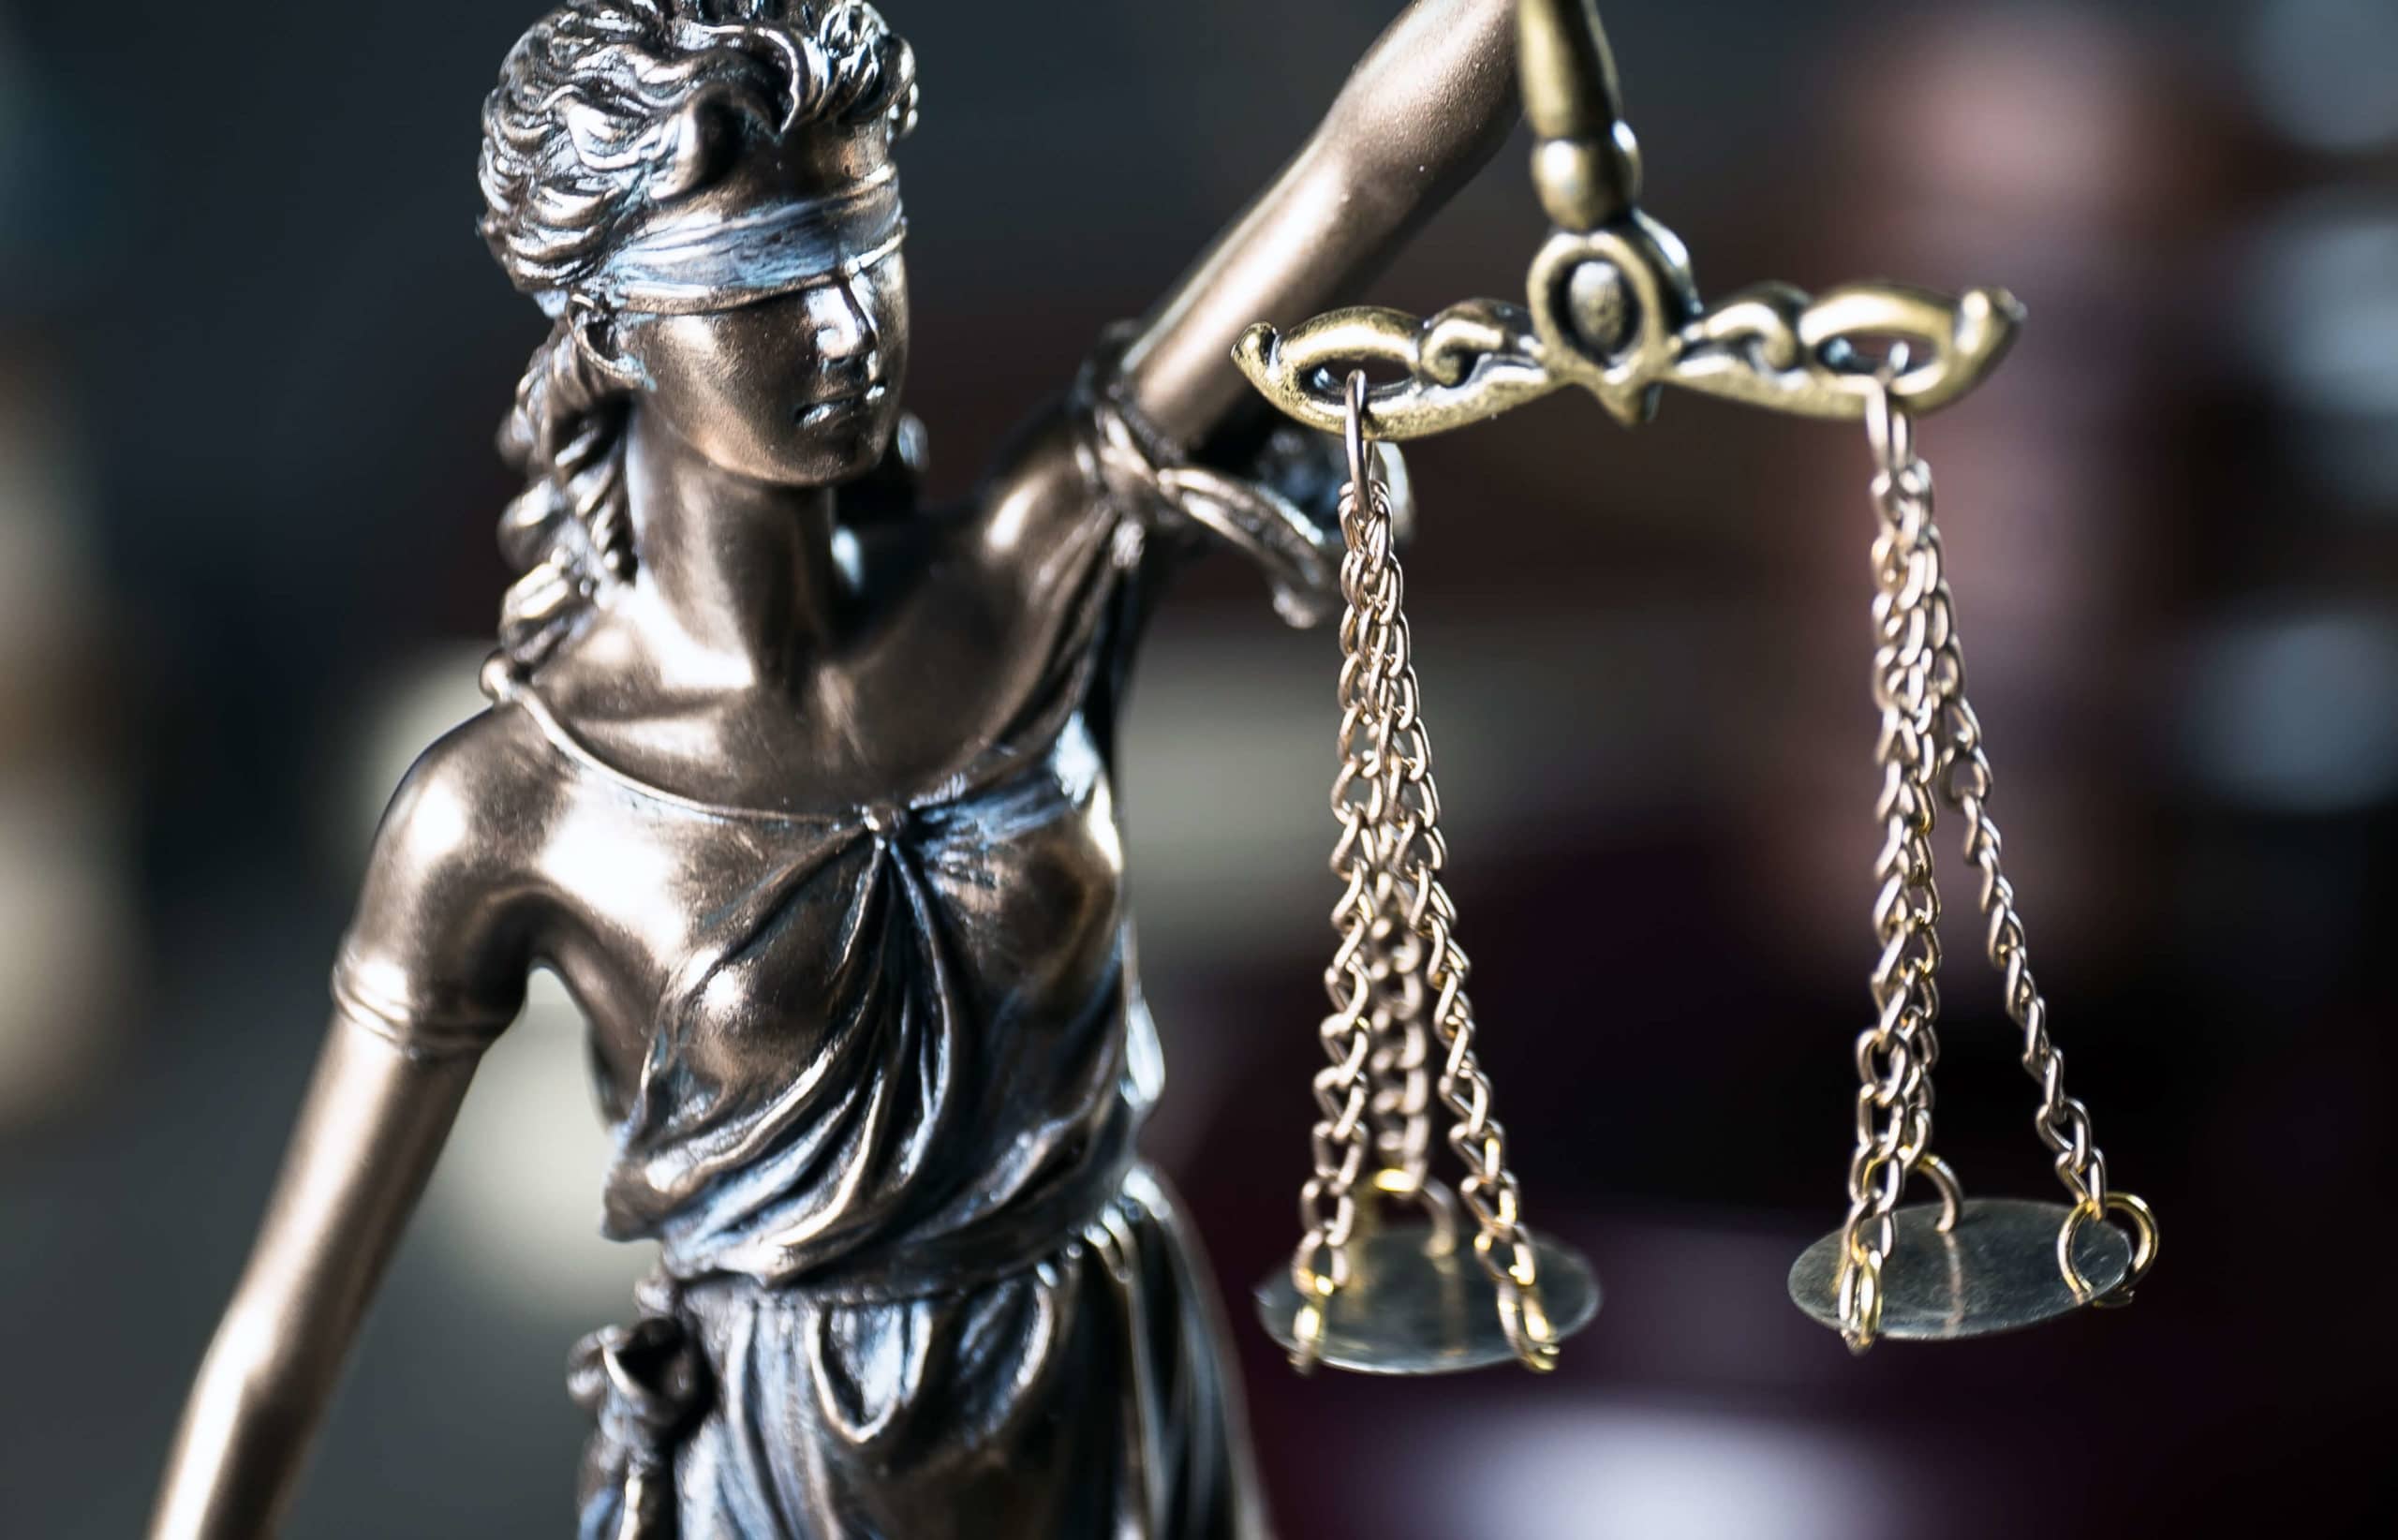 Justice gives snark in 21st appeal over $40 million estate